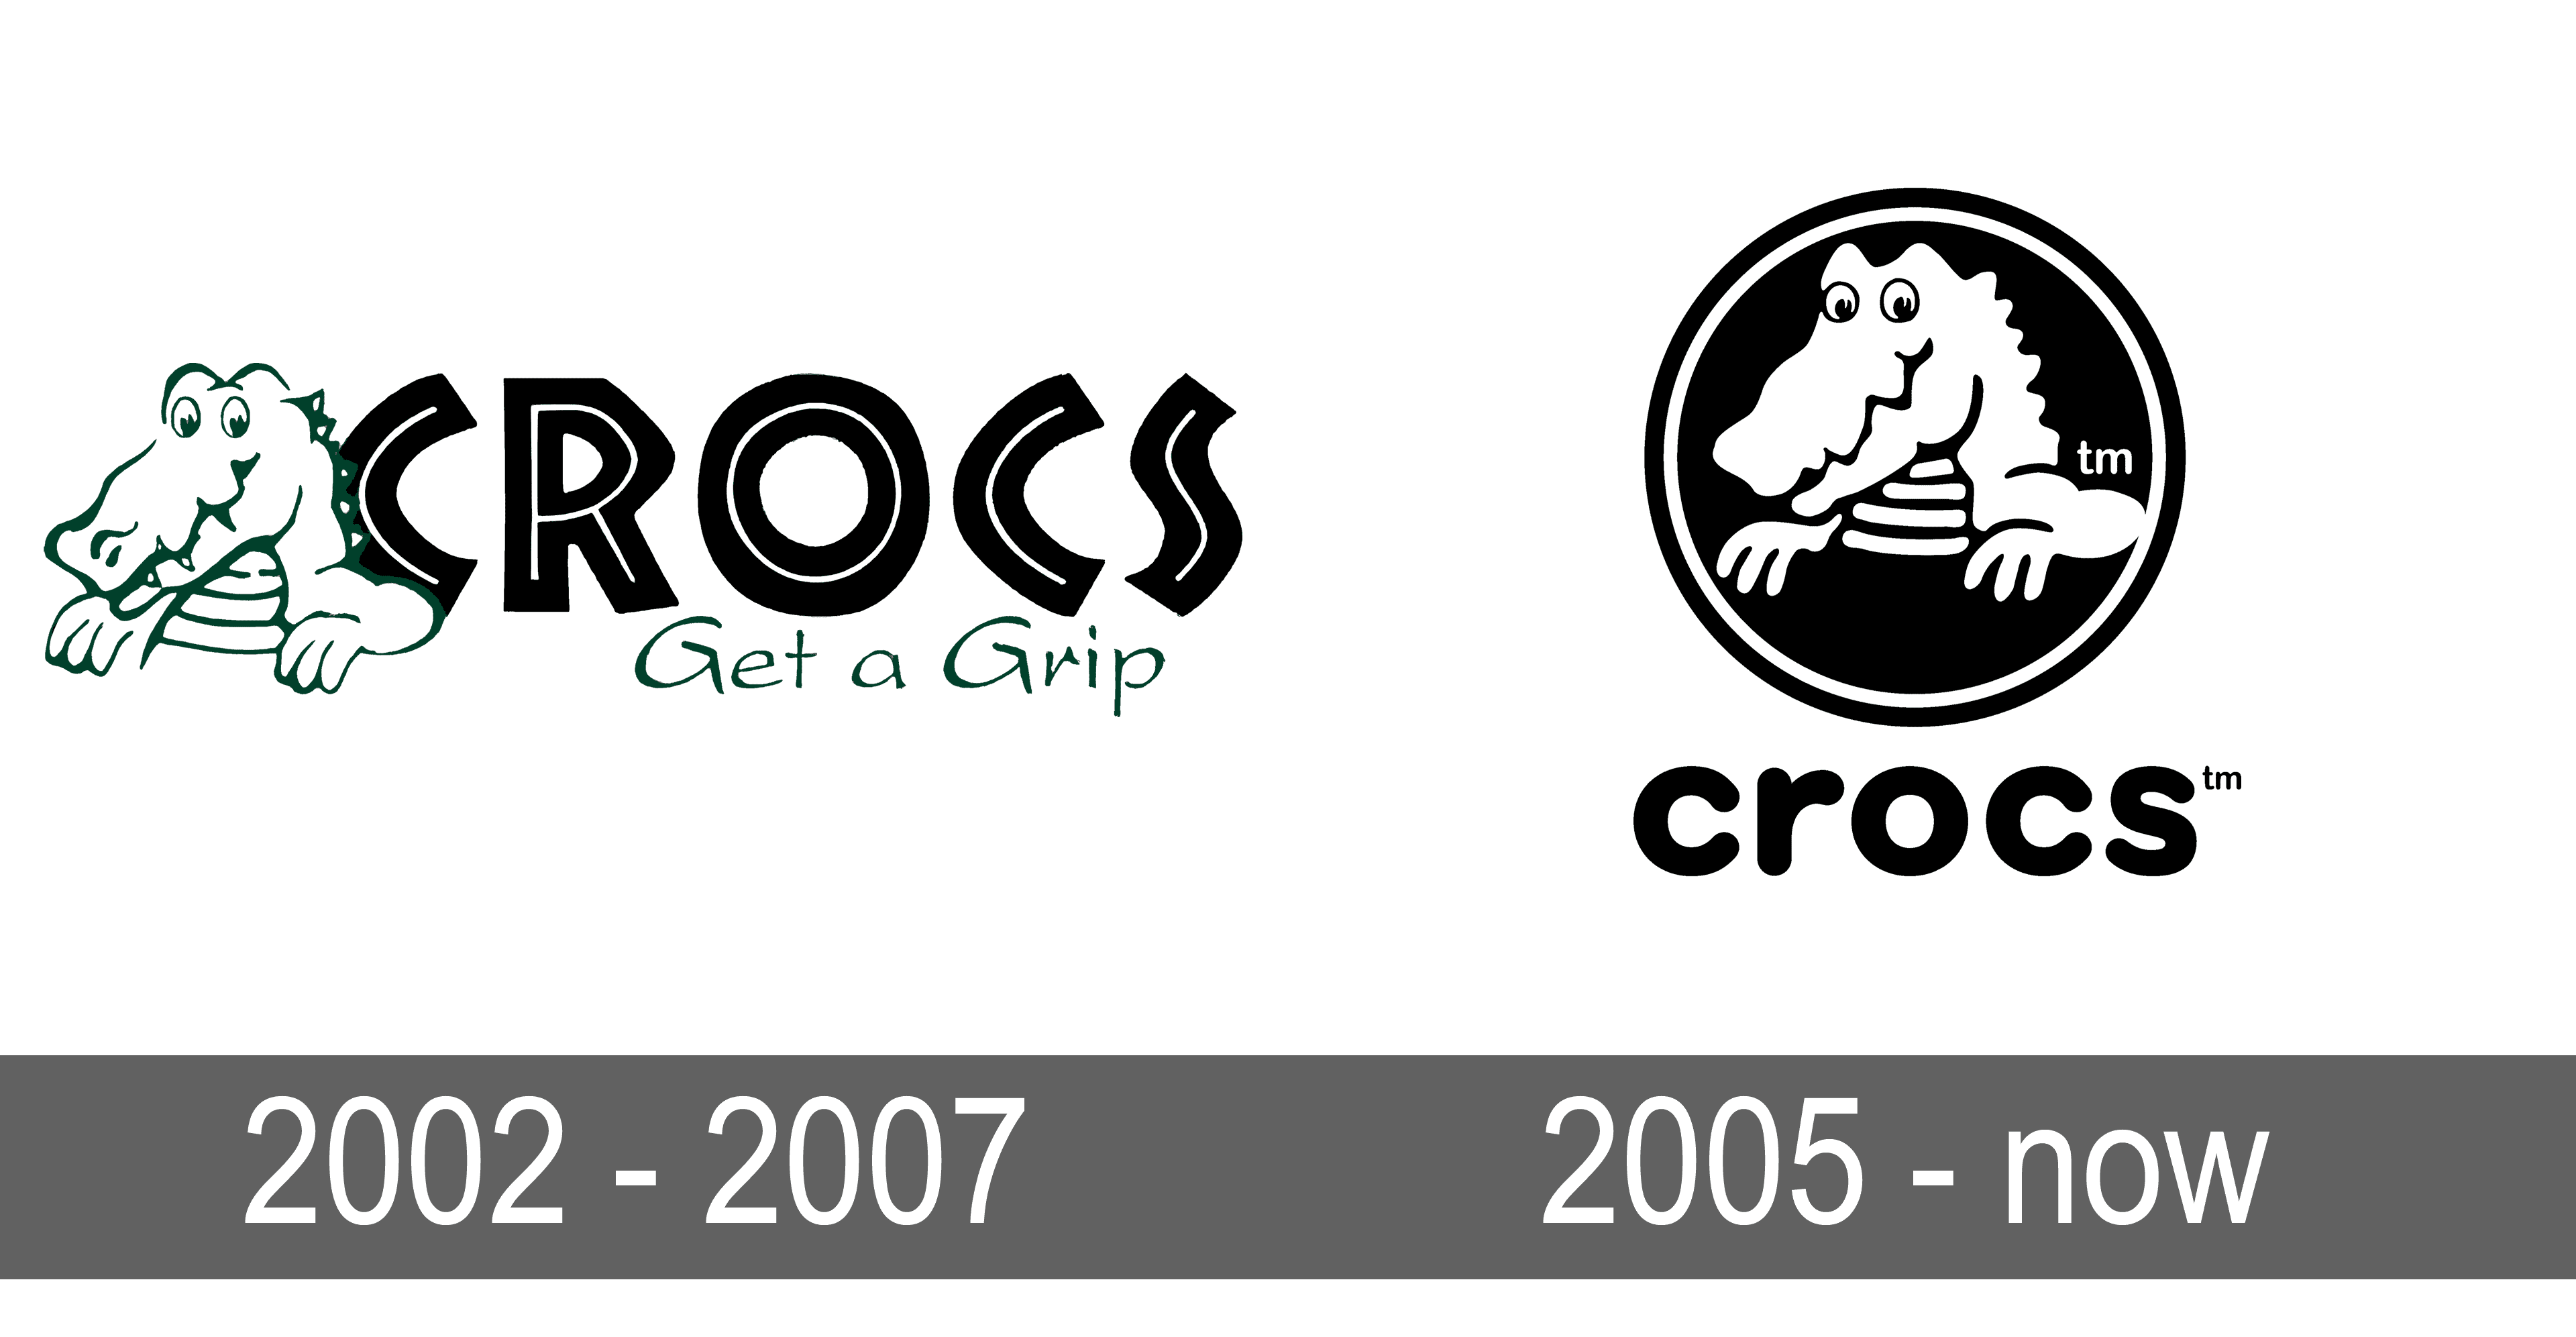 crocs logo png